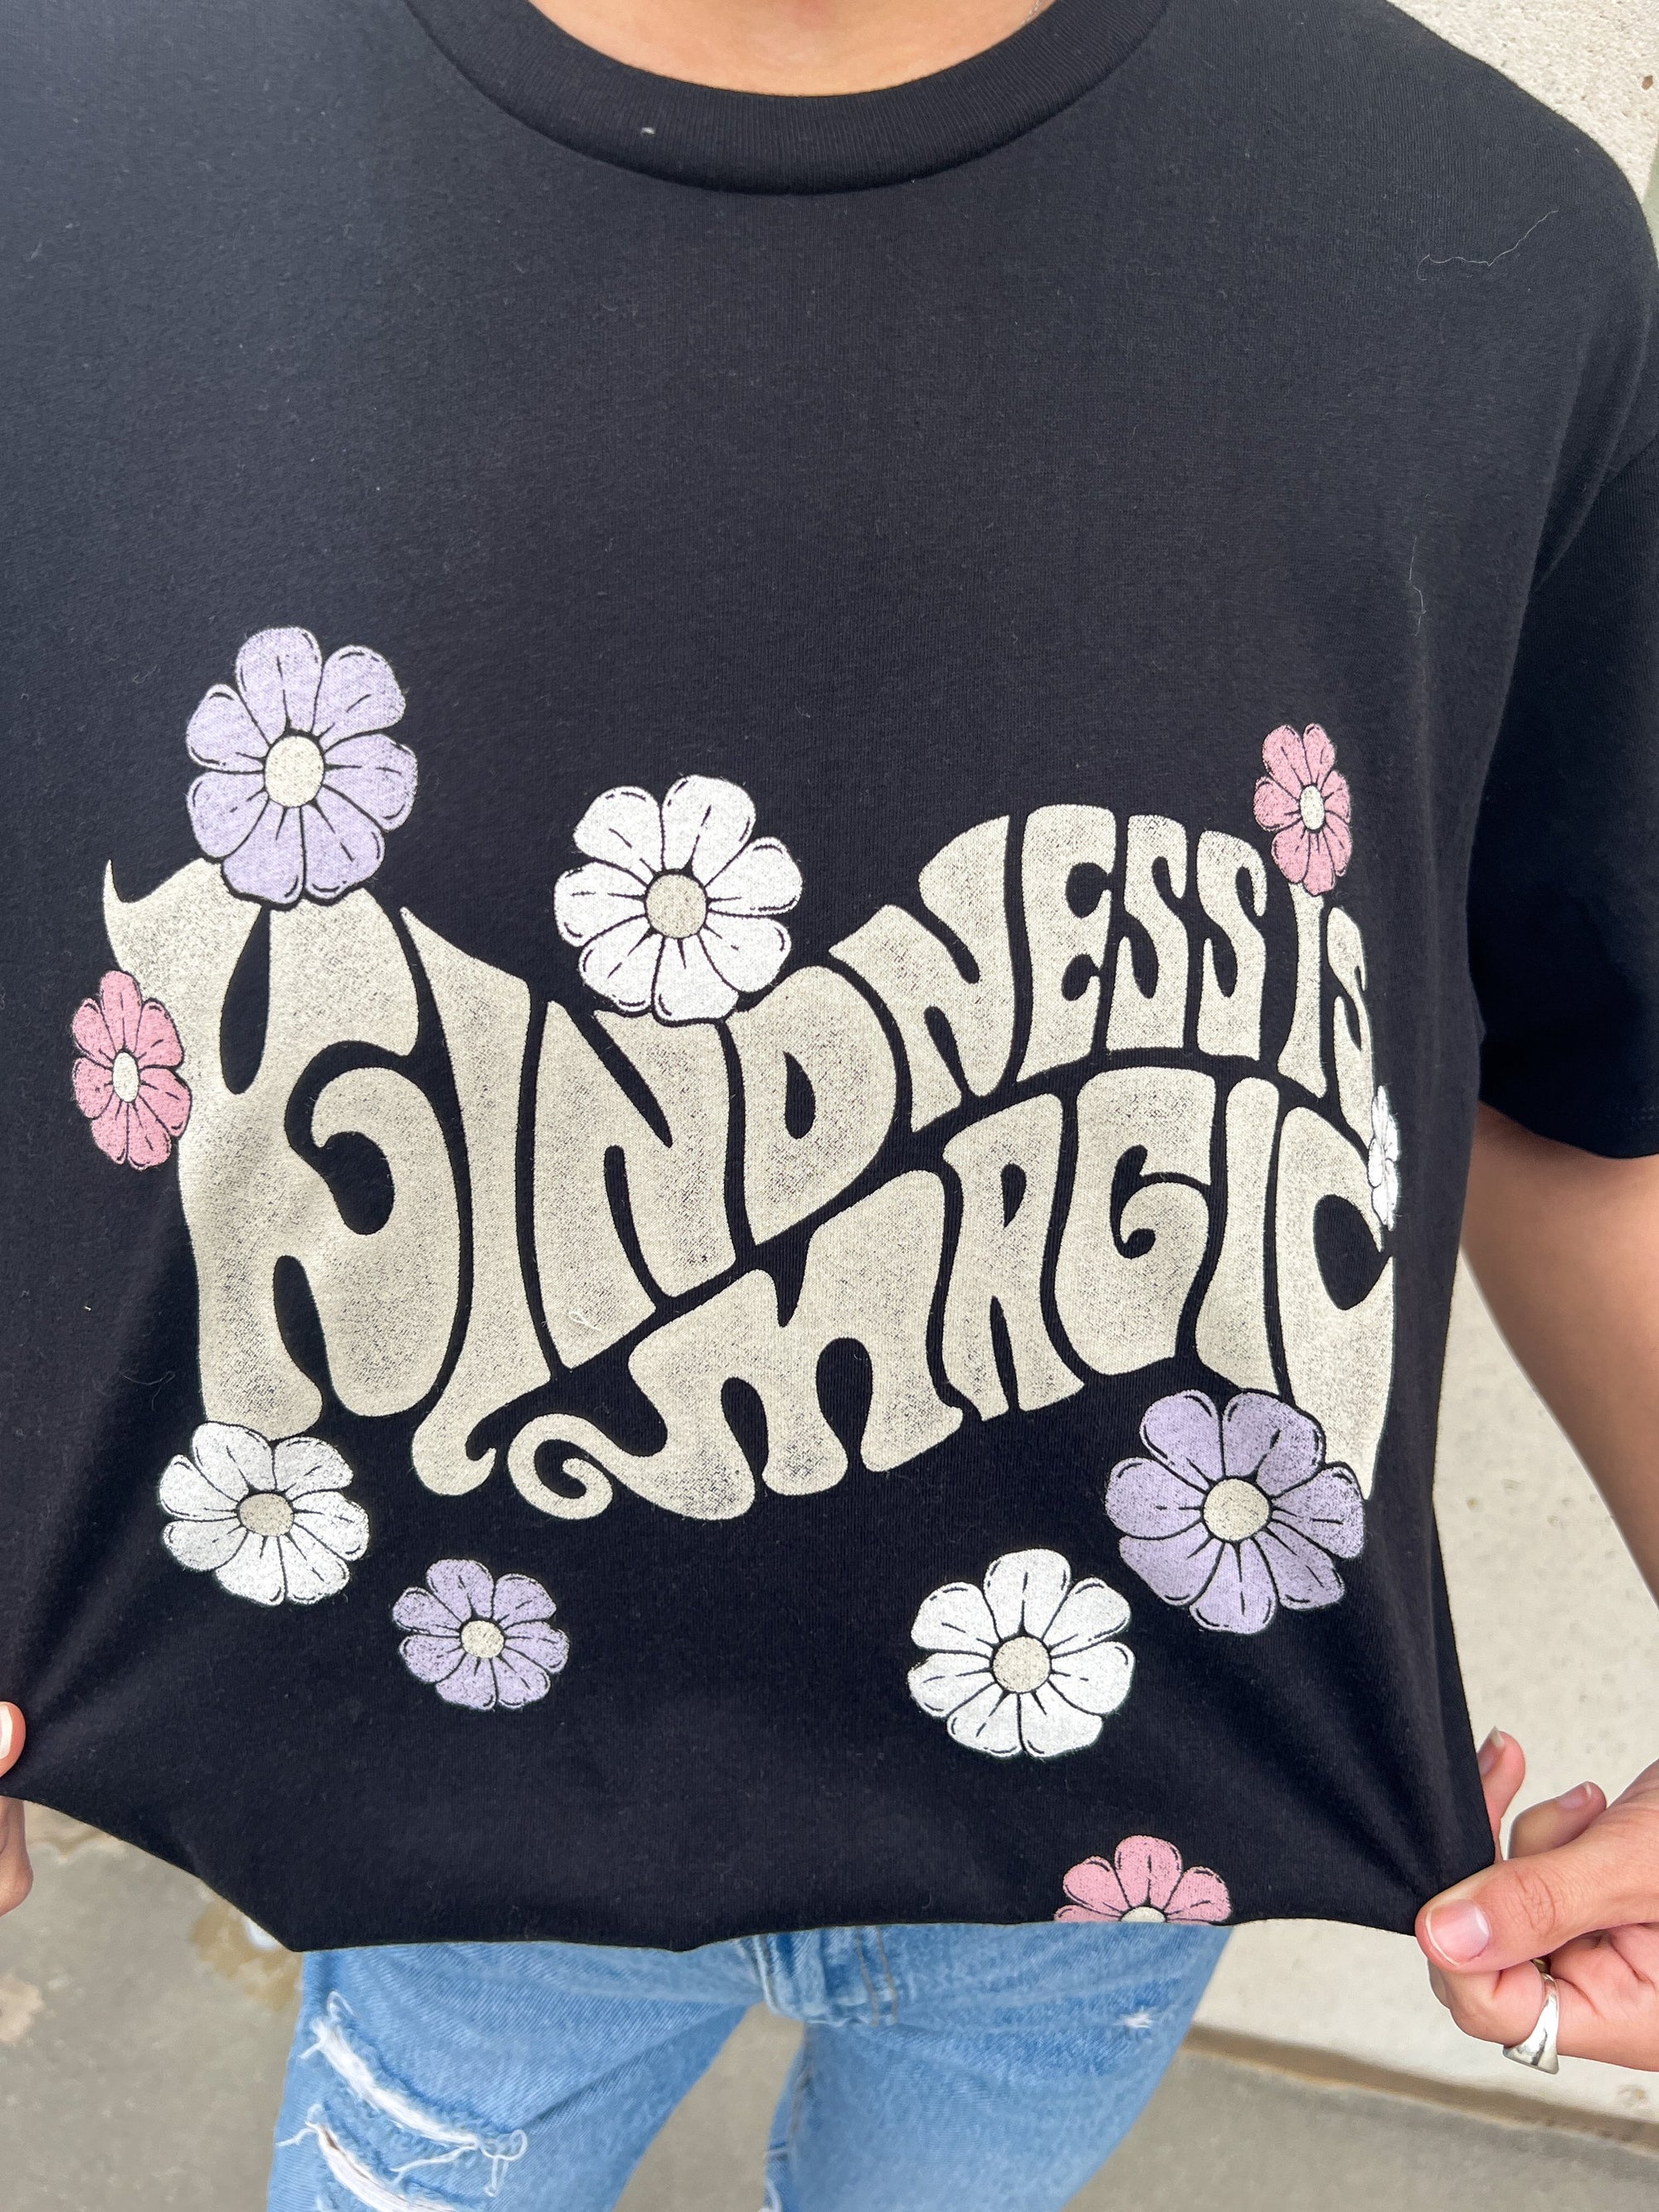 Kindness Is Magic T-Shirt